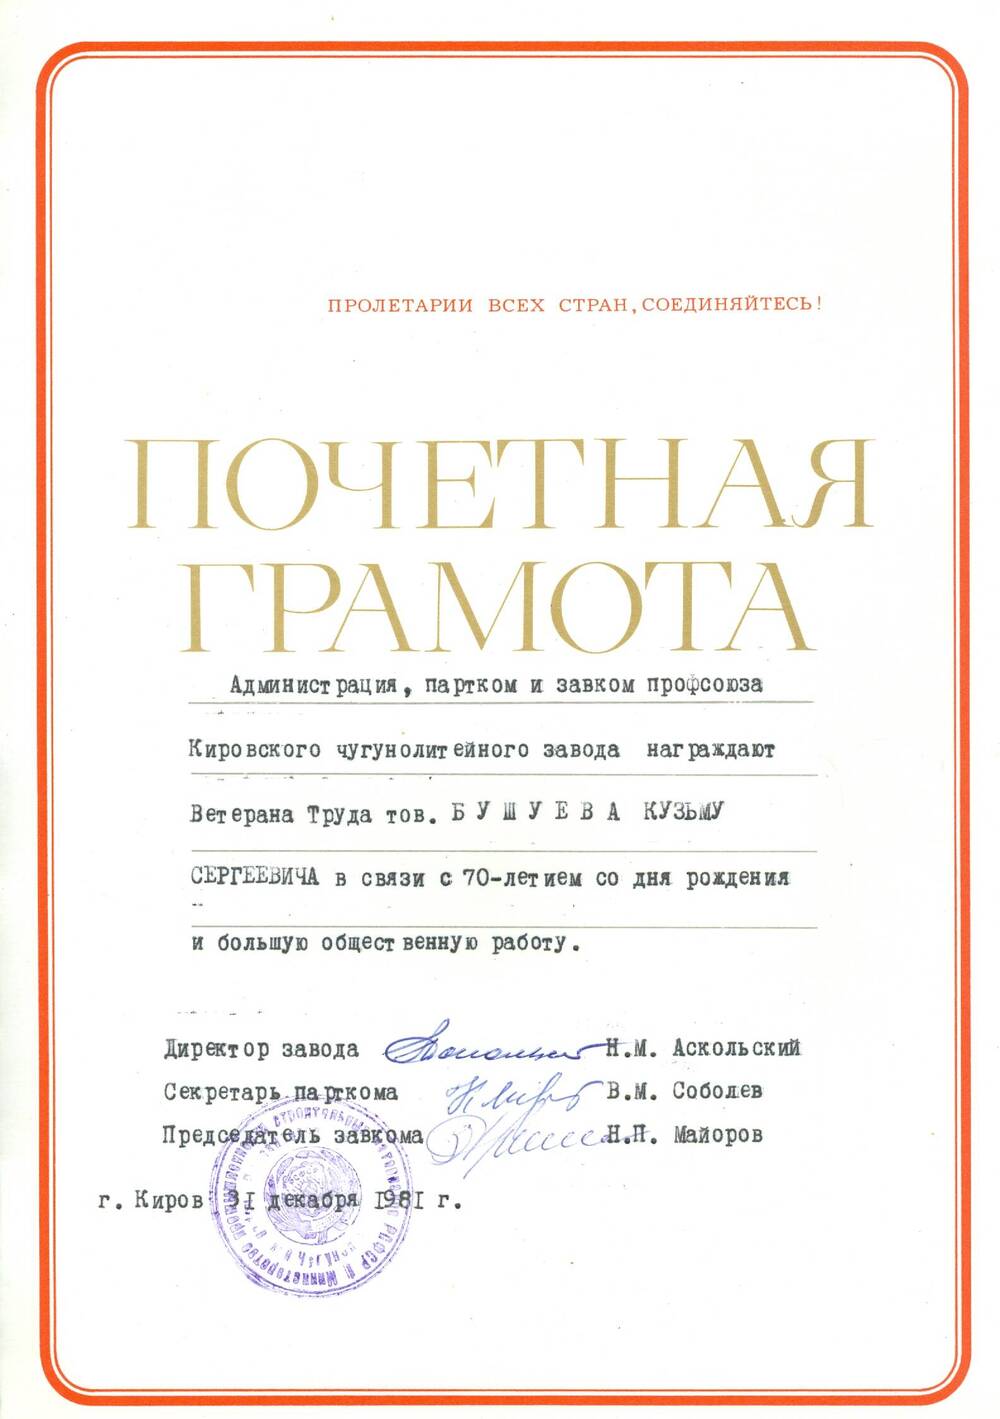 Почетная грамота Бушуева К. С. от администрации ЧЛЗ в связи с 70-летием со дня рождения